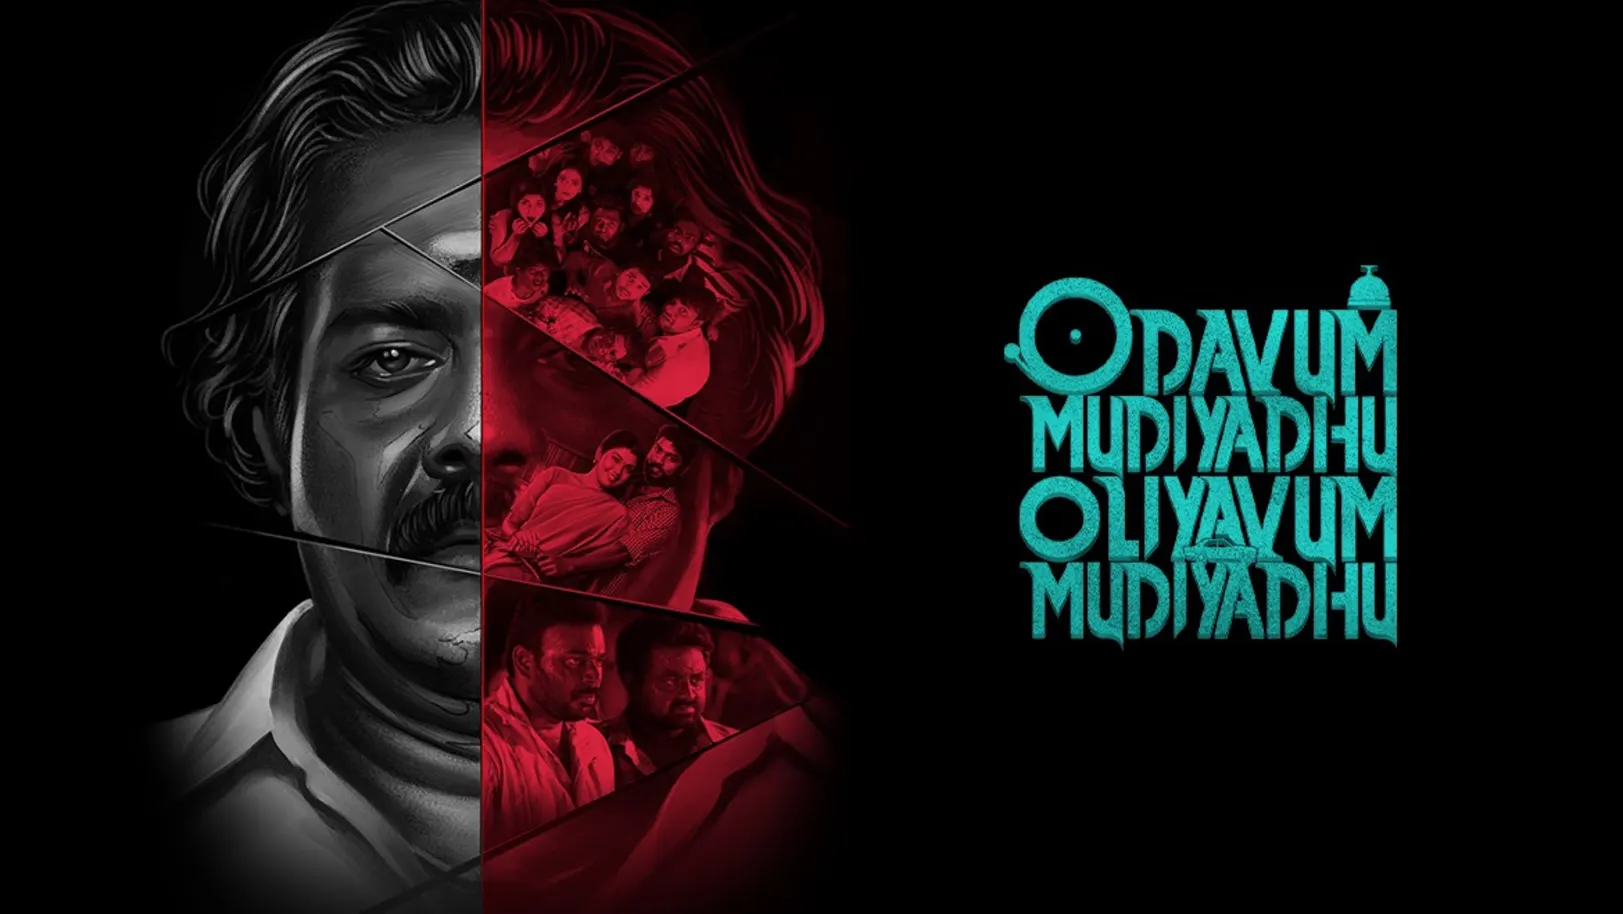 Odavum Mudiyadhu Oliyavum Mudiyadhu Movie